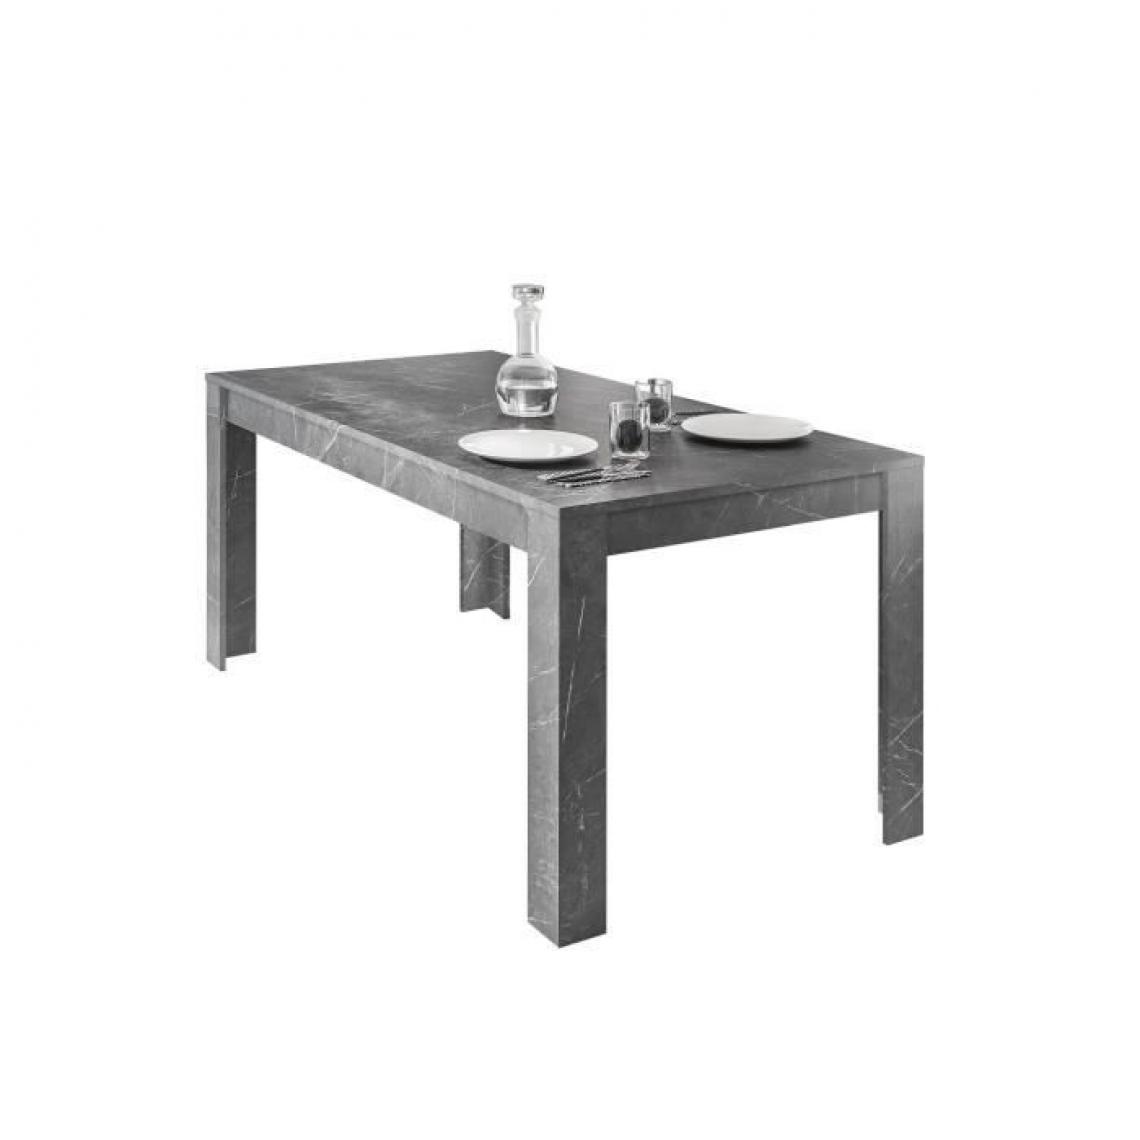 Cstore - CSTORE - table de salle à manger - 8 places - style contemporain - marmo - l 180xp 90xh 79 cm - Tables à manger